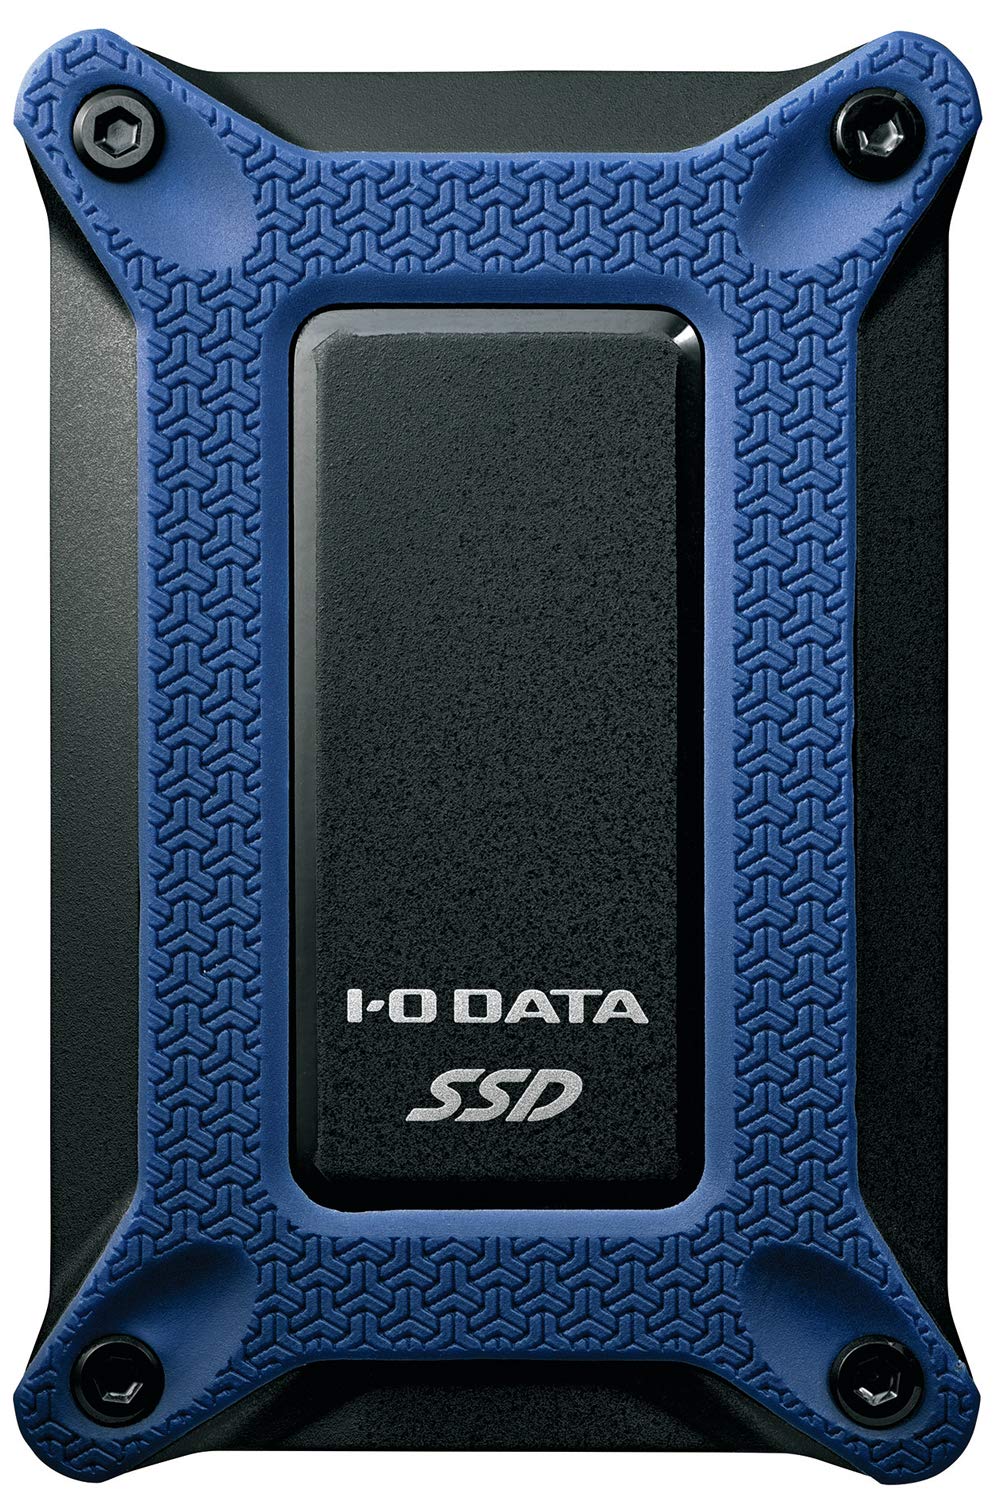 アイ・オー・データ ポータブルSSD 500GB USBタイプC 耐衝撃 PS4 Mac 名刺サイズ USB3.1(Gen2) バスパワー 日本メーカー SSPG-USC500NB